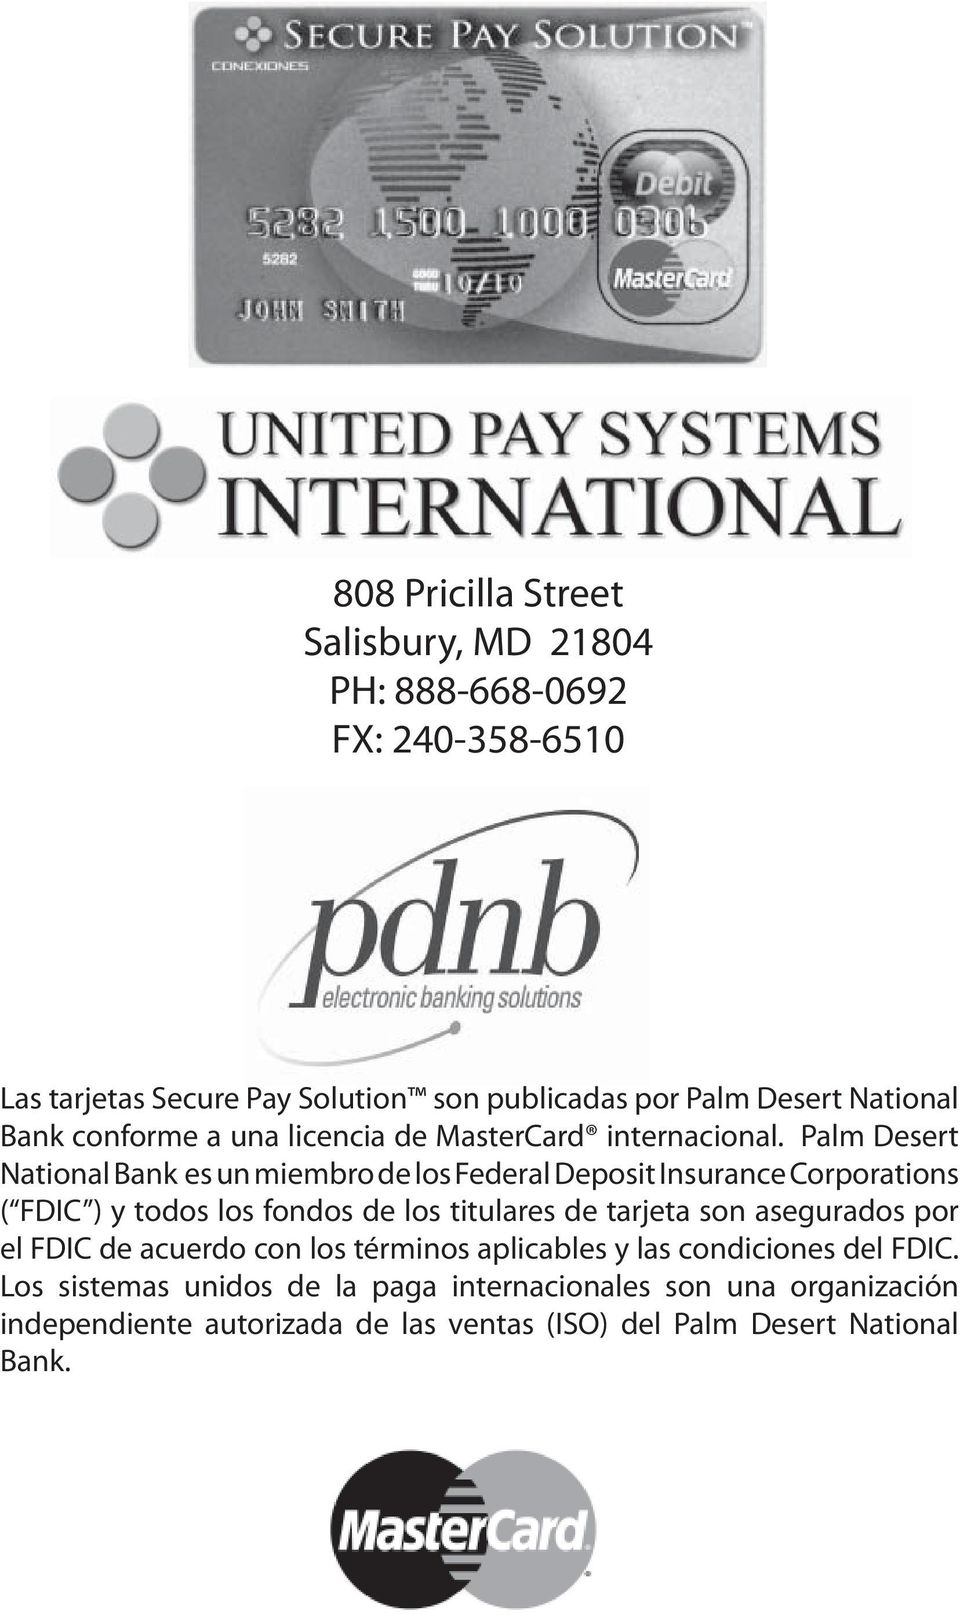 Palm Desert National Bank es un miembro de los Federal Deposit Insurance Corporations ( FDIC ) y todos los fondos de los titulares de tarjeta son